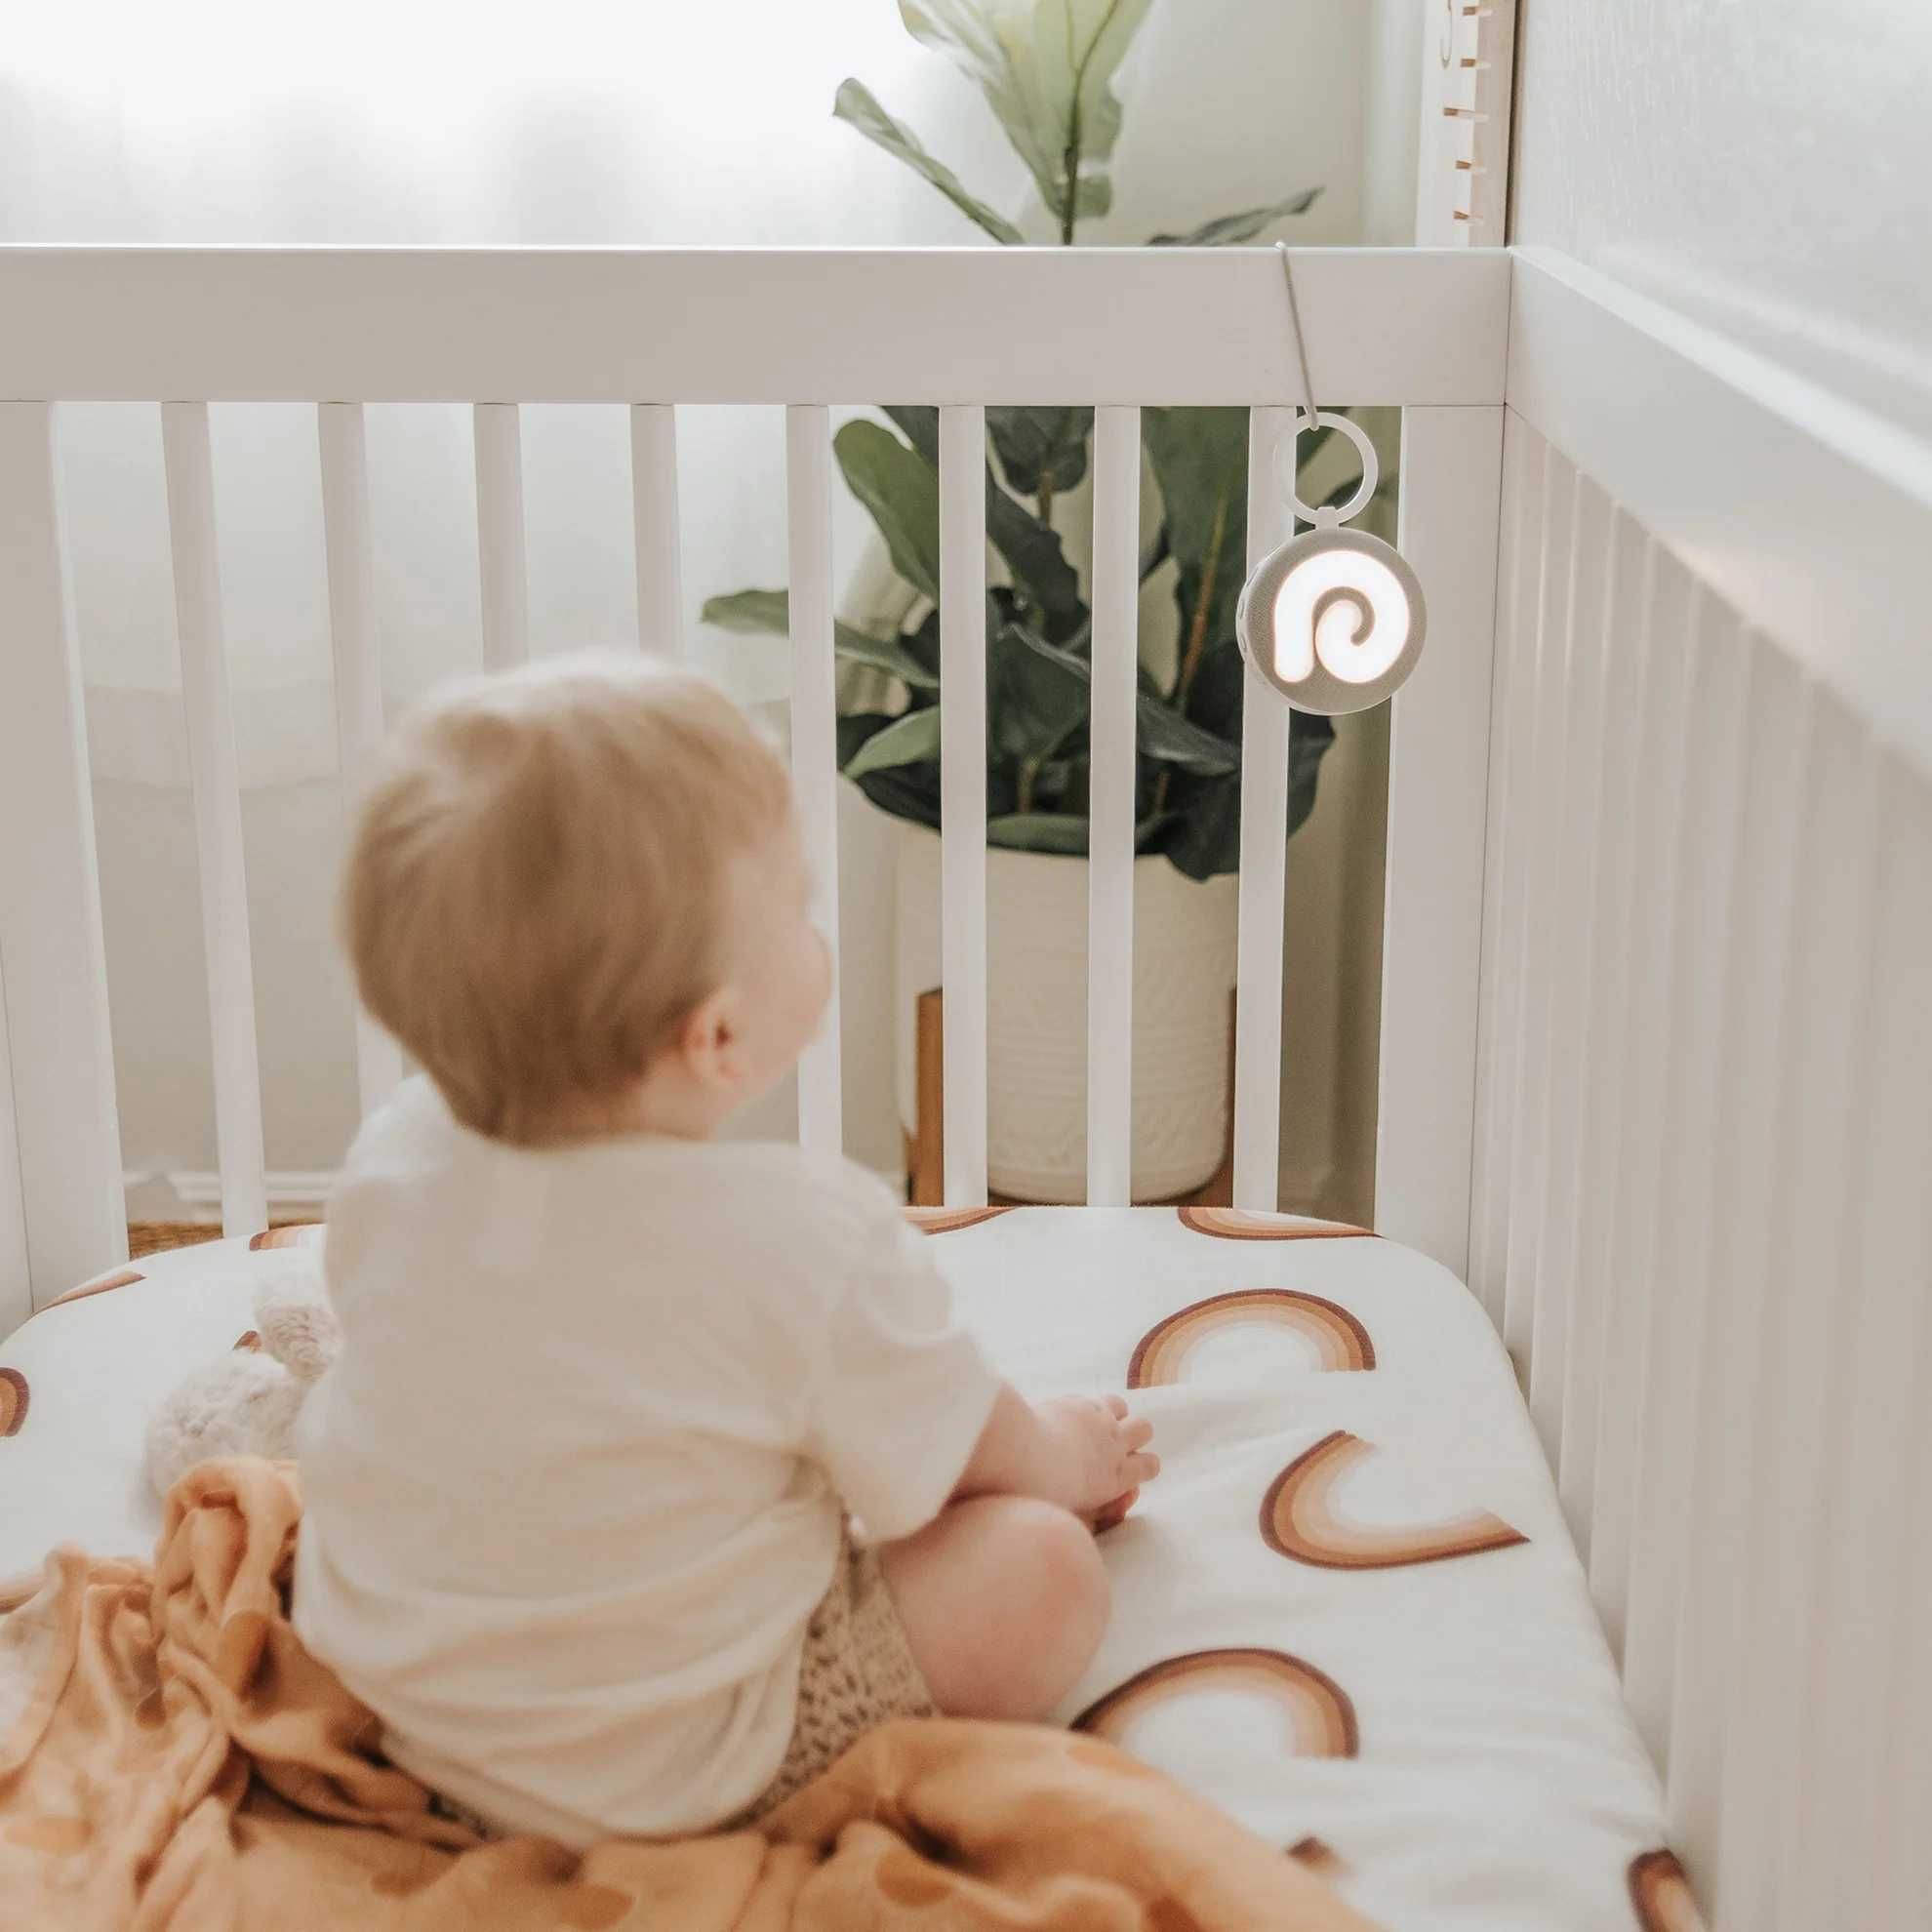 Звукова машина Baby - Dreamegg D11 для сну дитини з нічником